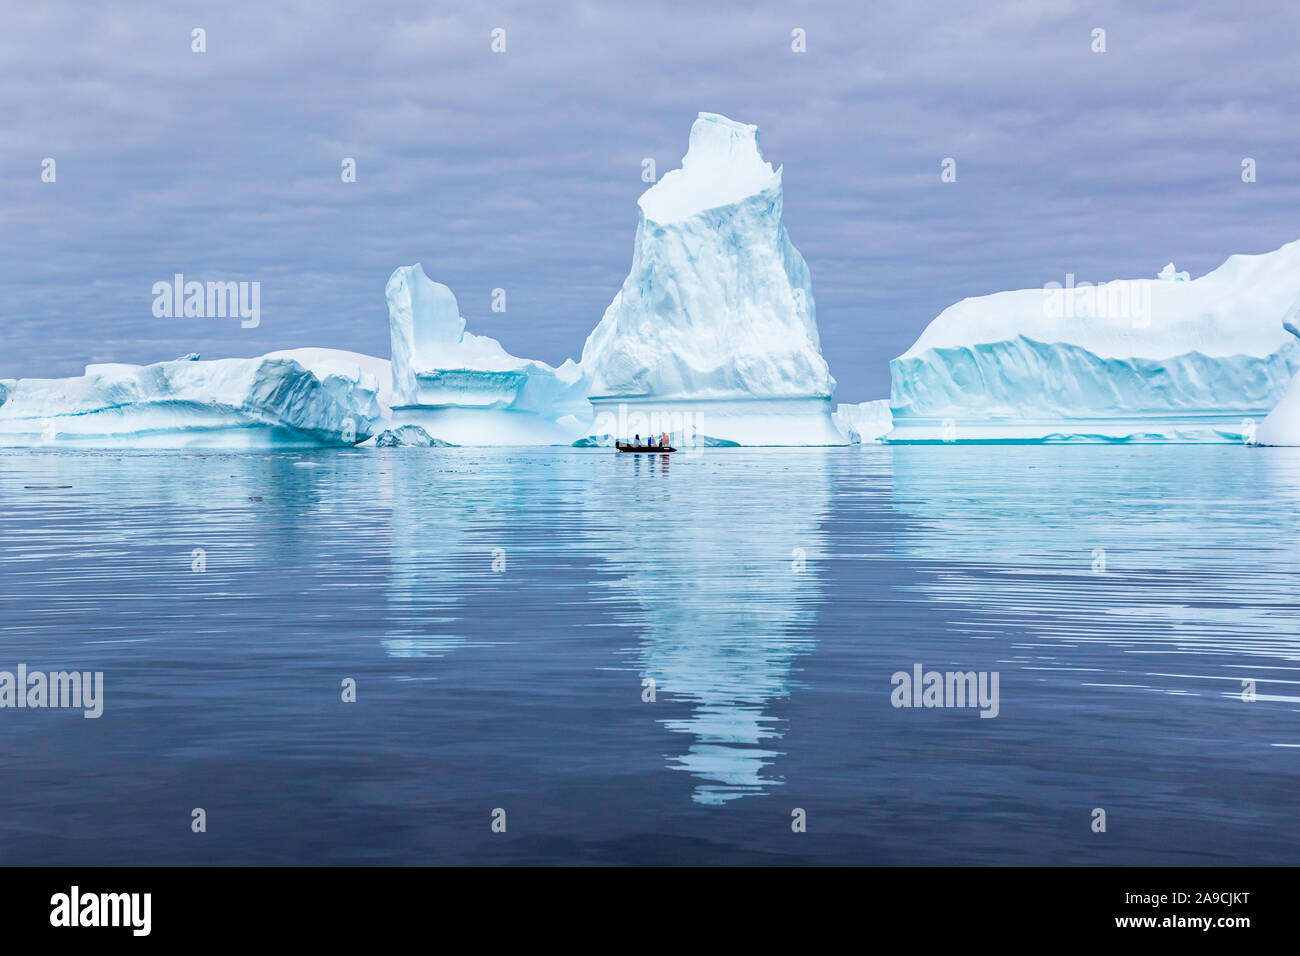 Eisberg Friedhof in der Antarktis mit vielen riesigen Masse an Eis gestrandet bietet spektakuläre polaren Landschaft für Touristen auf Sternzeichen Boote, gefroren Kompanie Stockfoto